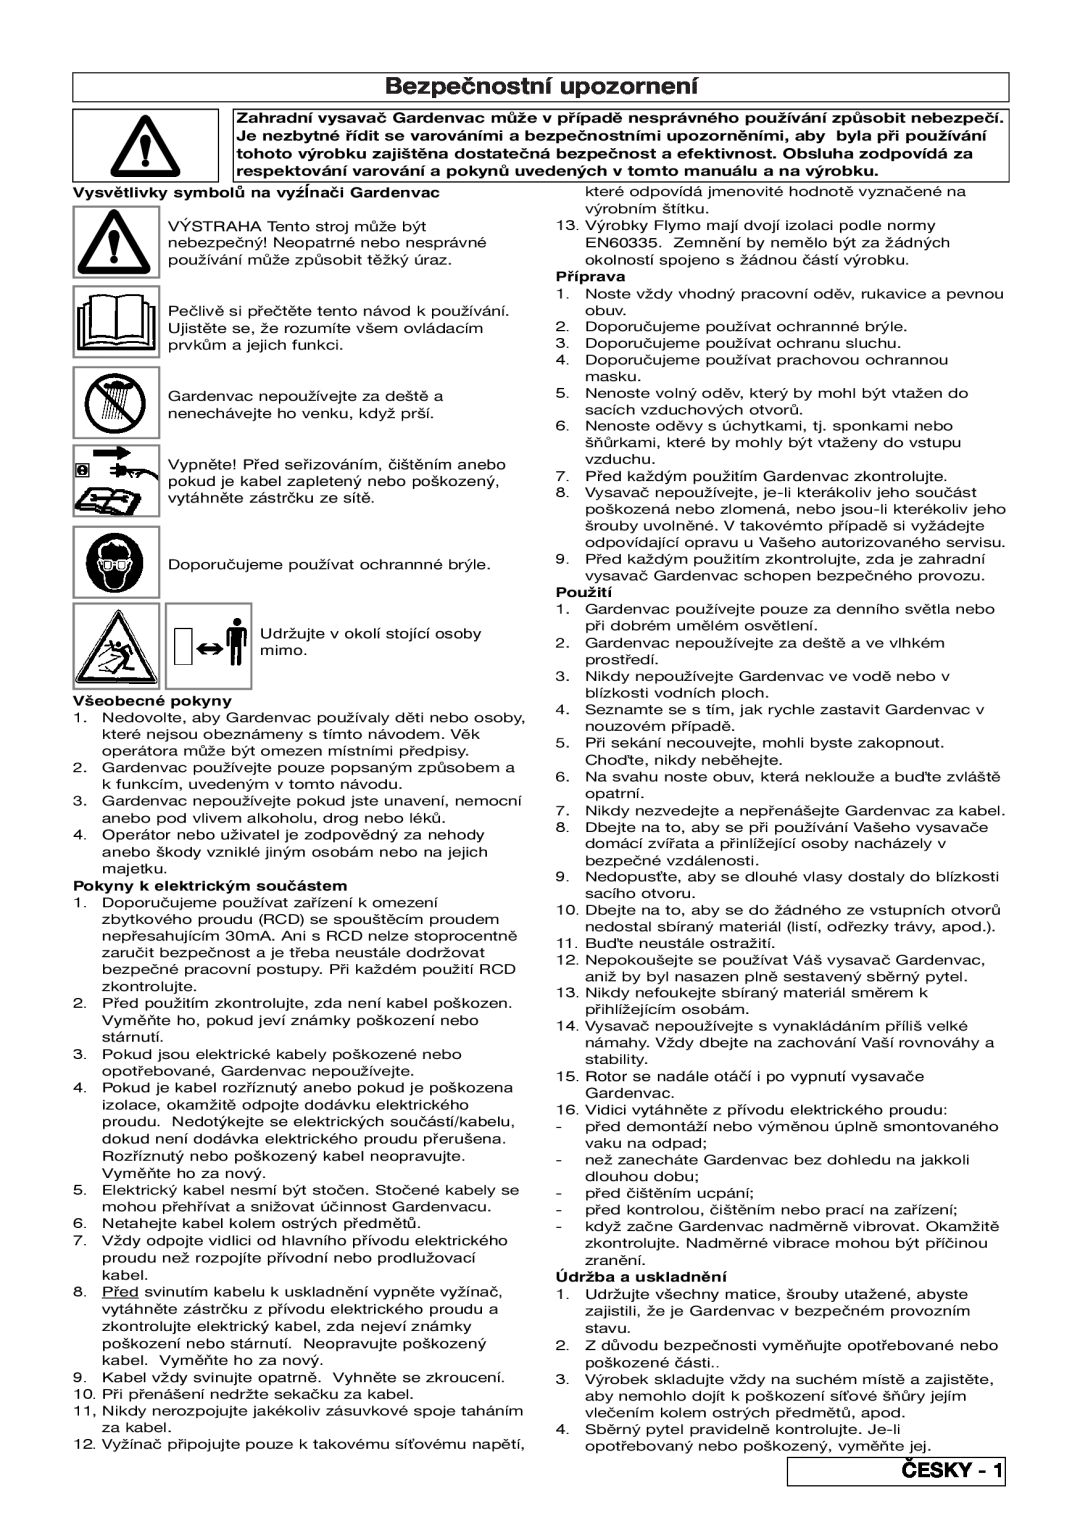 Flymo 2200 Bezpečnostní upozornení, Česky, Vysvětlivky symbolů na vyźĺnači Gardenvac, Všeobecné pokyny, Příprava, Použití 